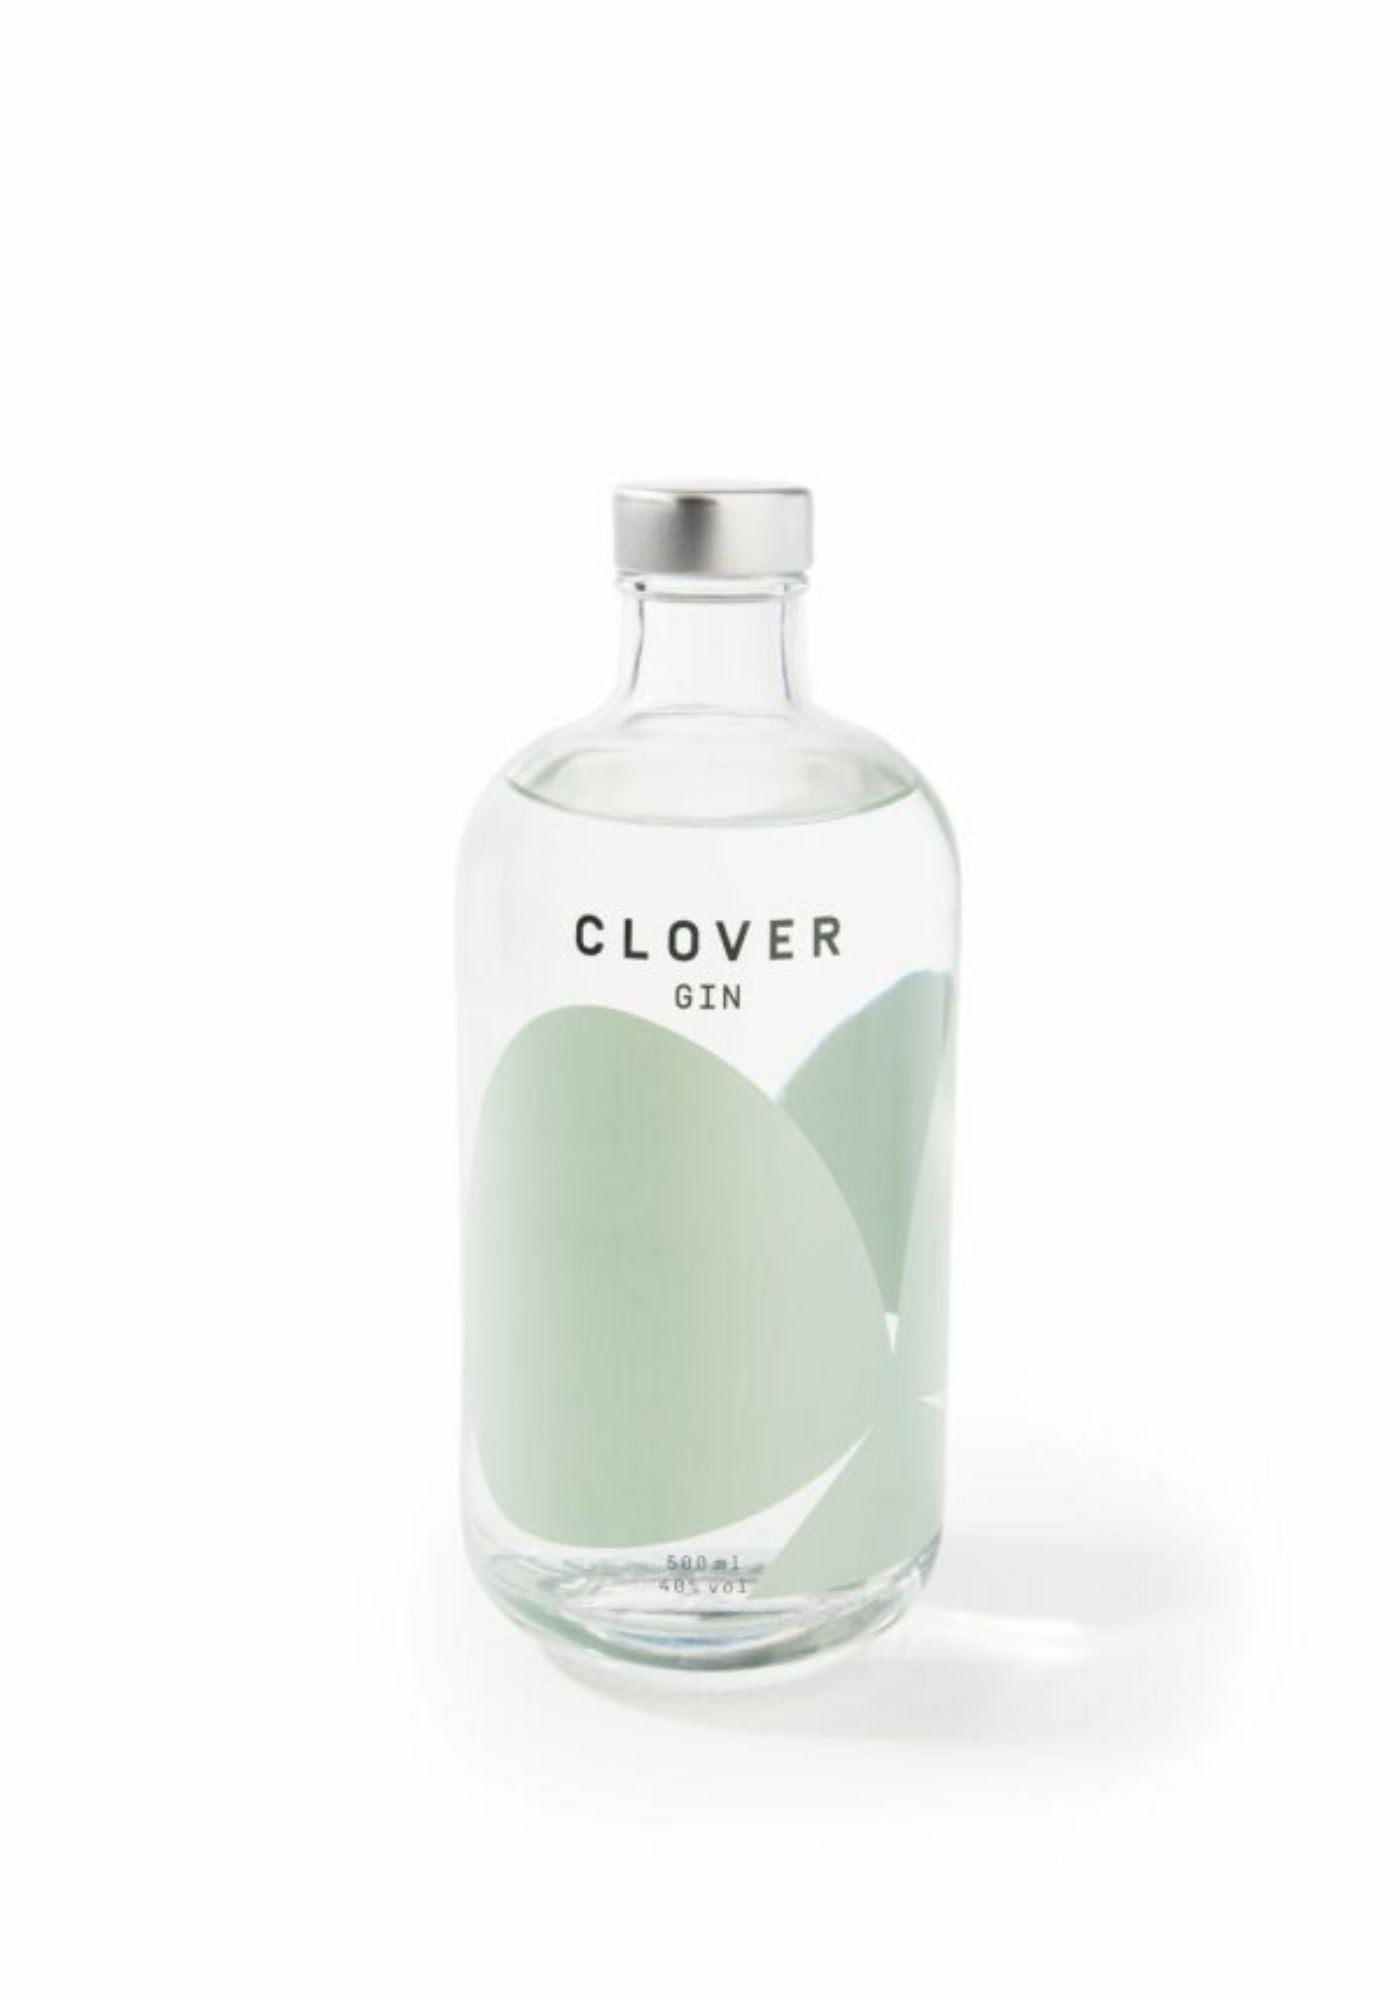 bouteille-clover-original-clover-gin